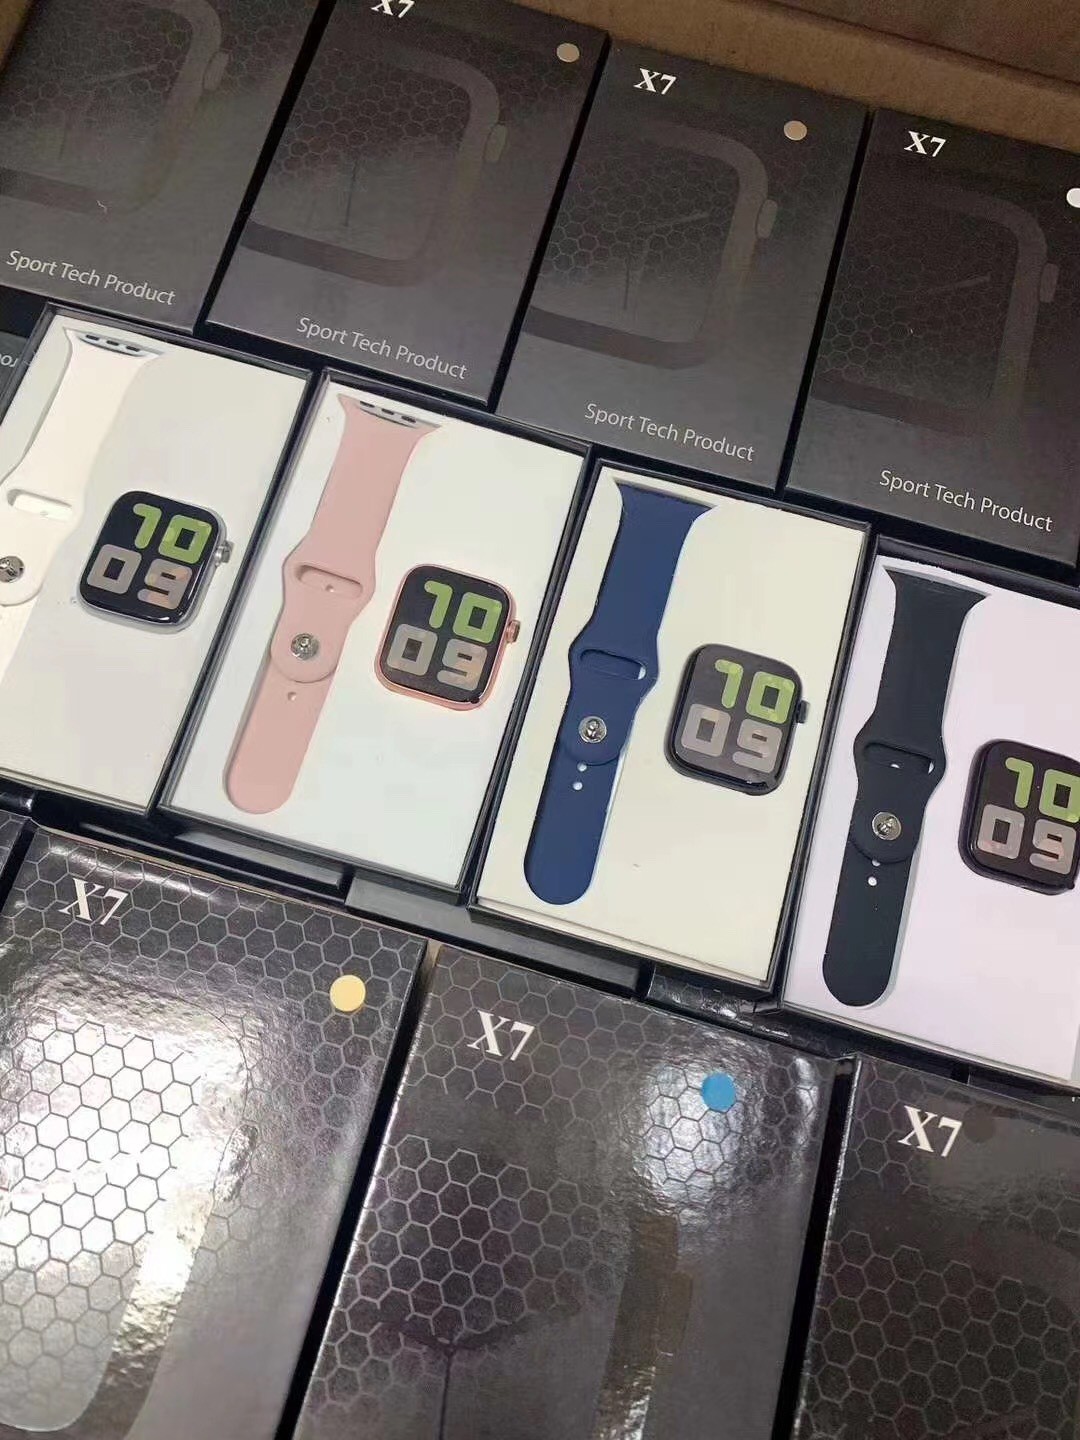 厂家直销X7智能手表 新款心率监测计步运动手表 蓝牙通话手表手环详情图9